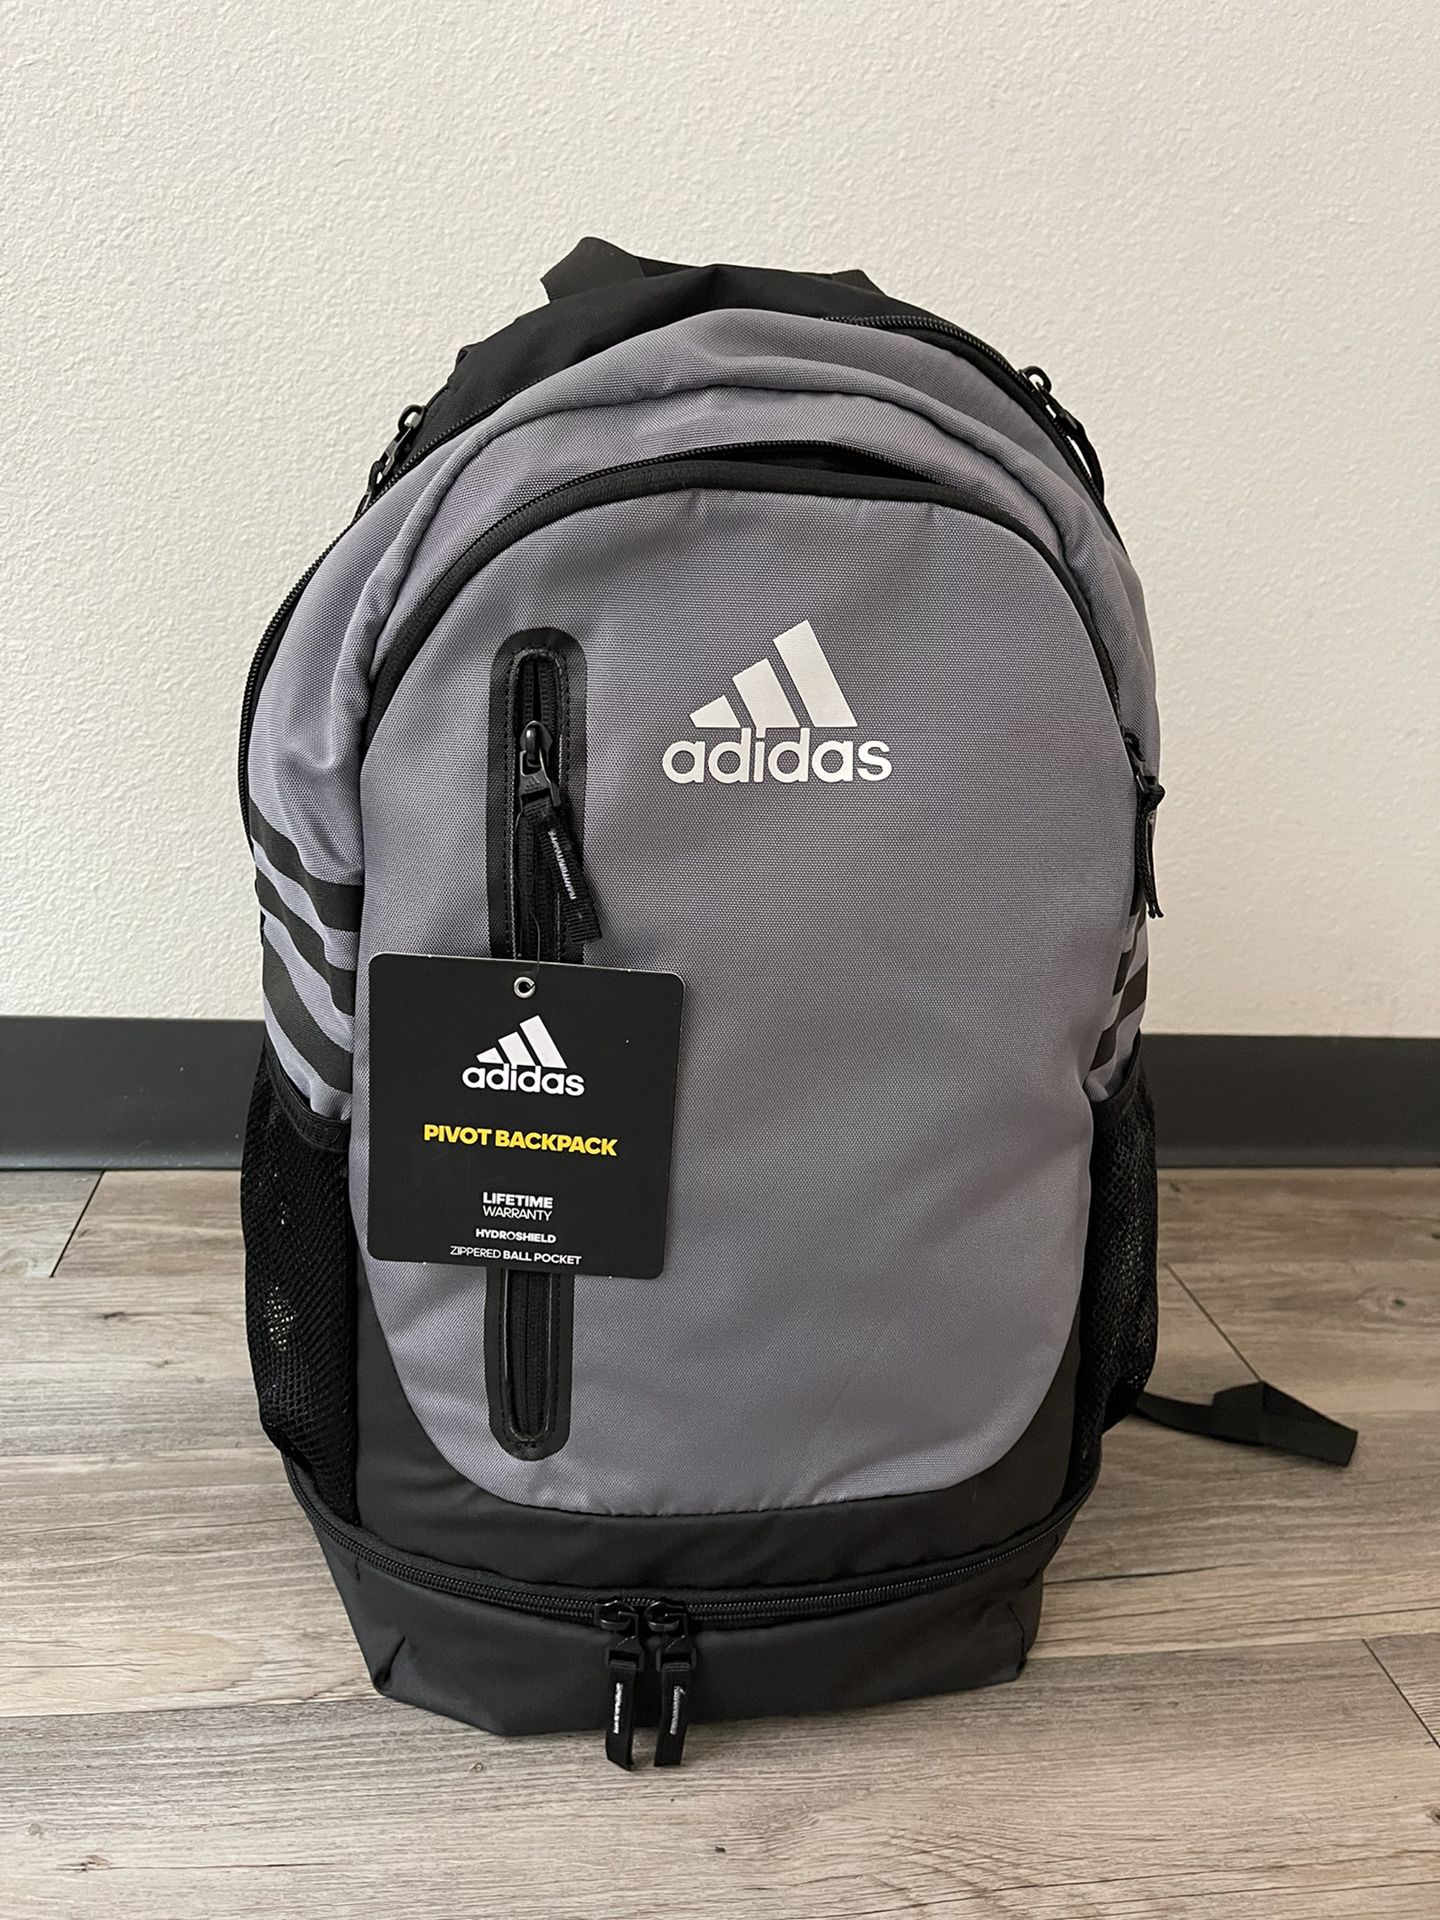 Antídoto conspiración omitir Adidas Backpack for Sale in Phoenix, AZ - OfferUp